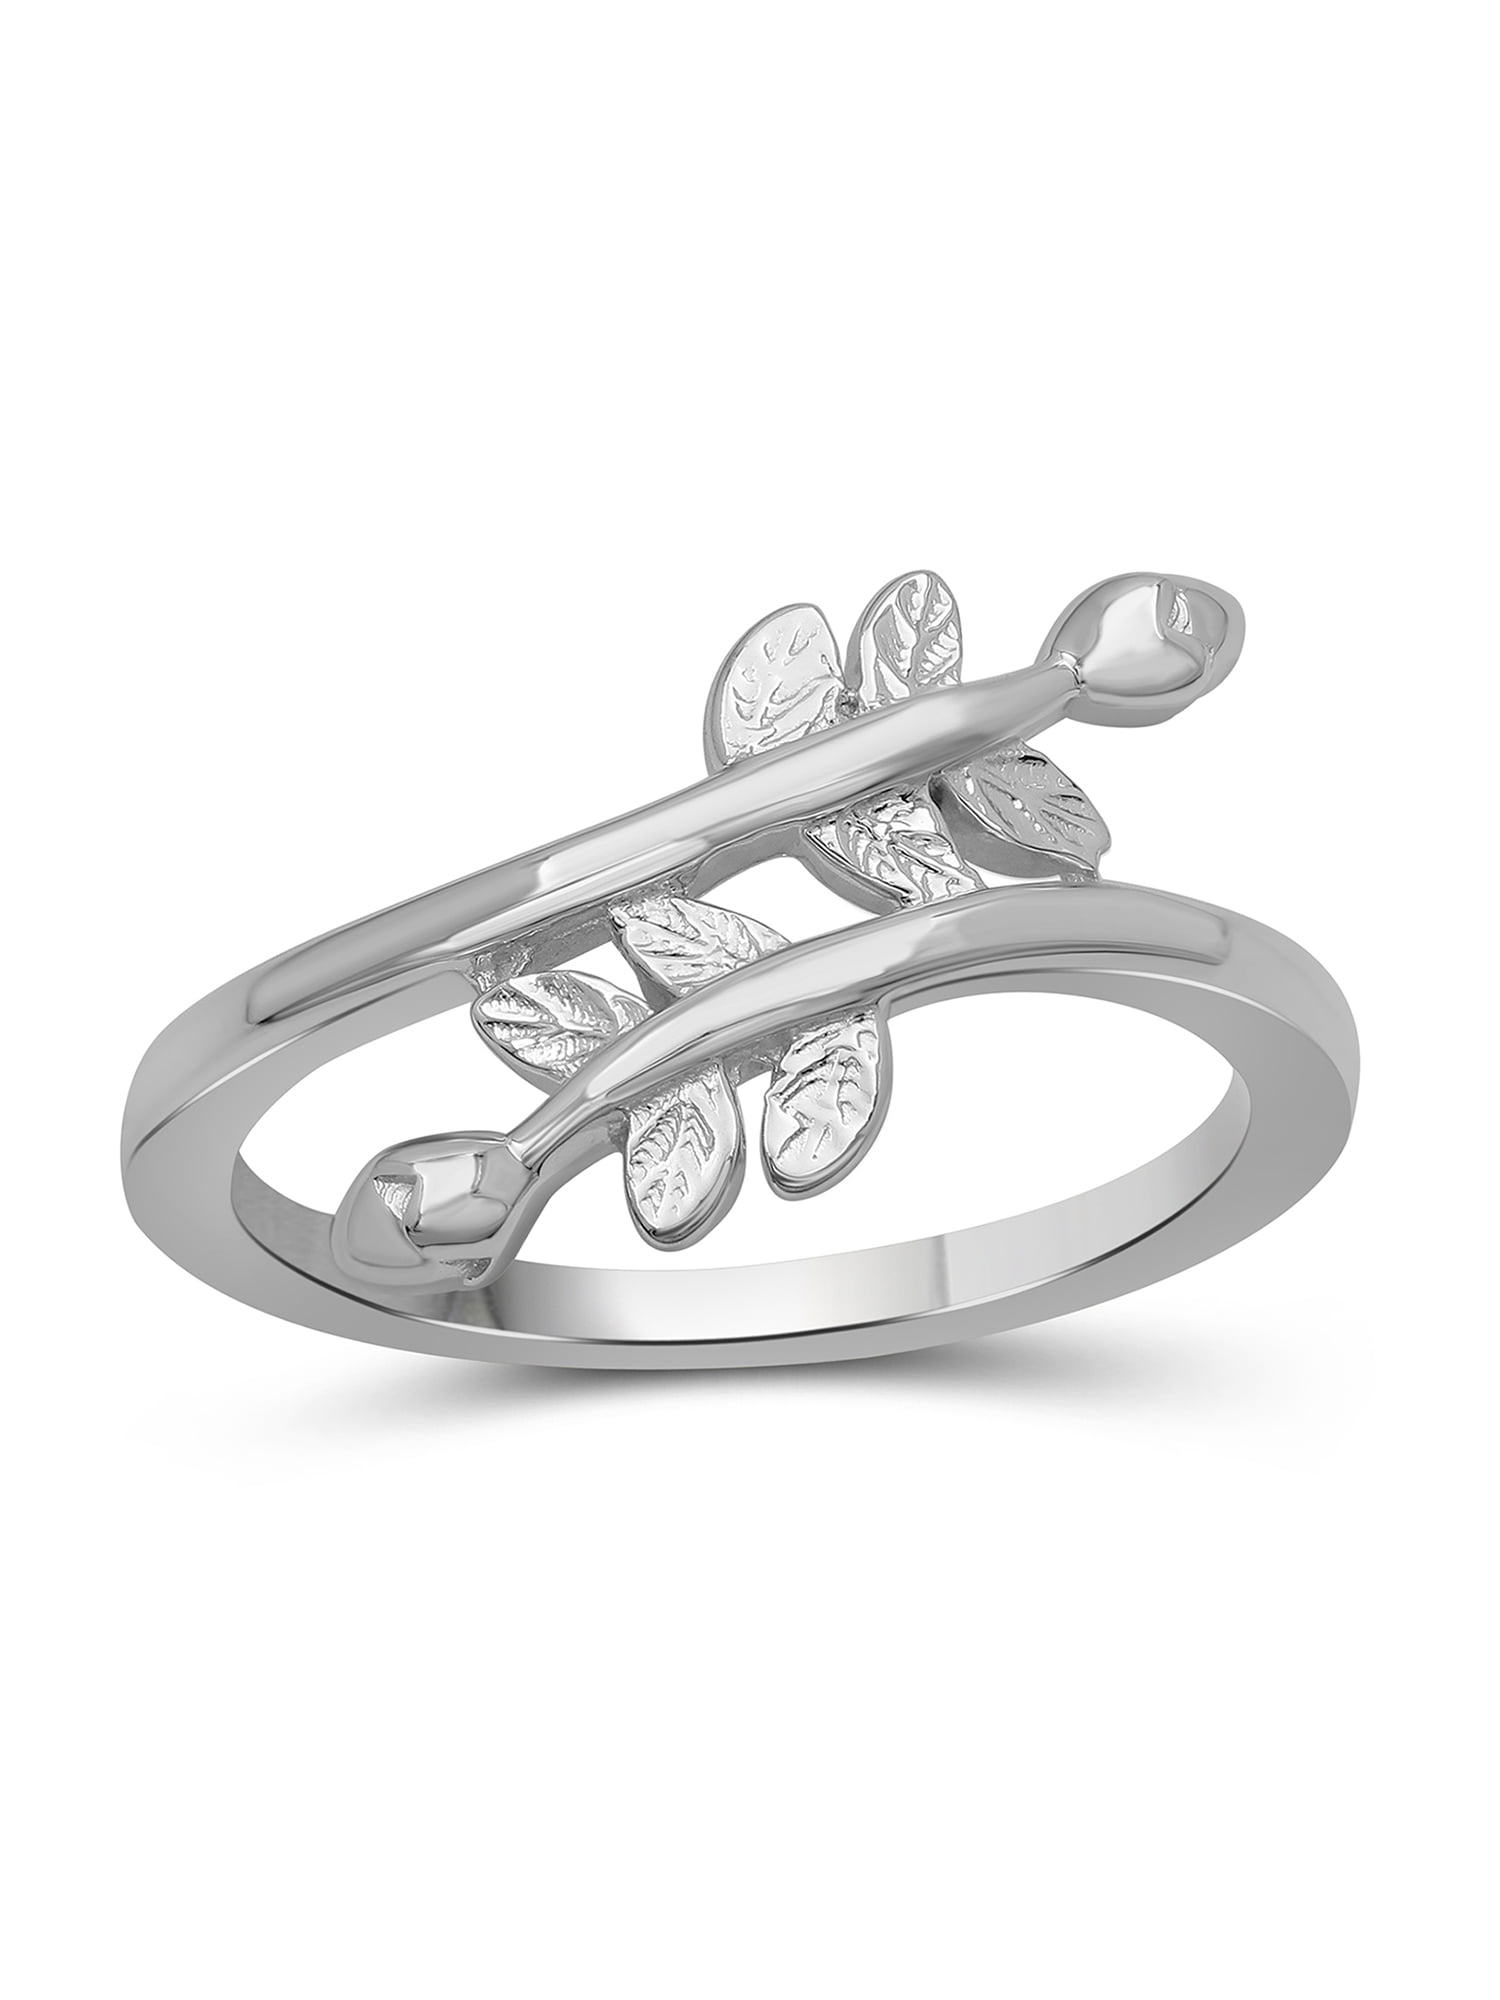 Cheap Promise Rings | Promise Rings | Bypass .08ct Diamond Promise Ring in  10k White Gold | SuperJeweler